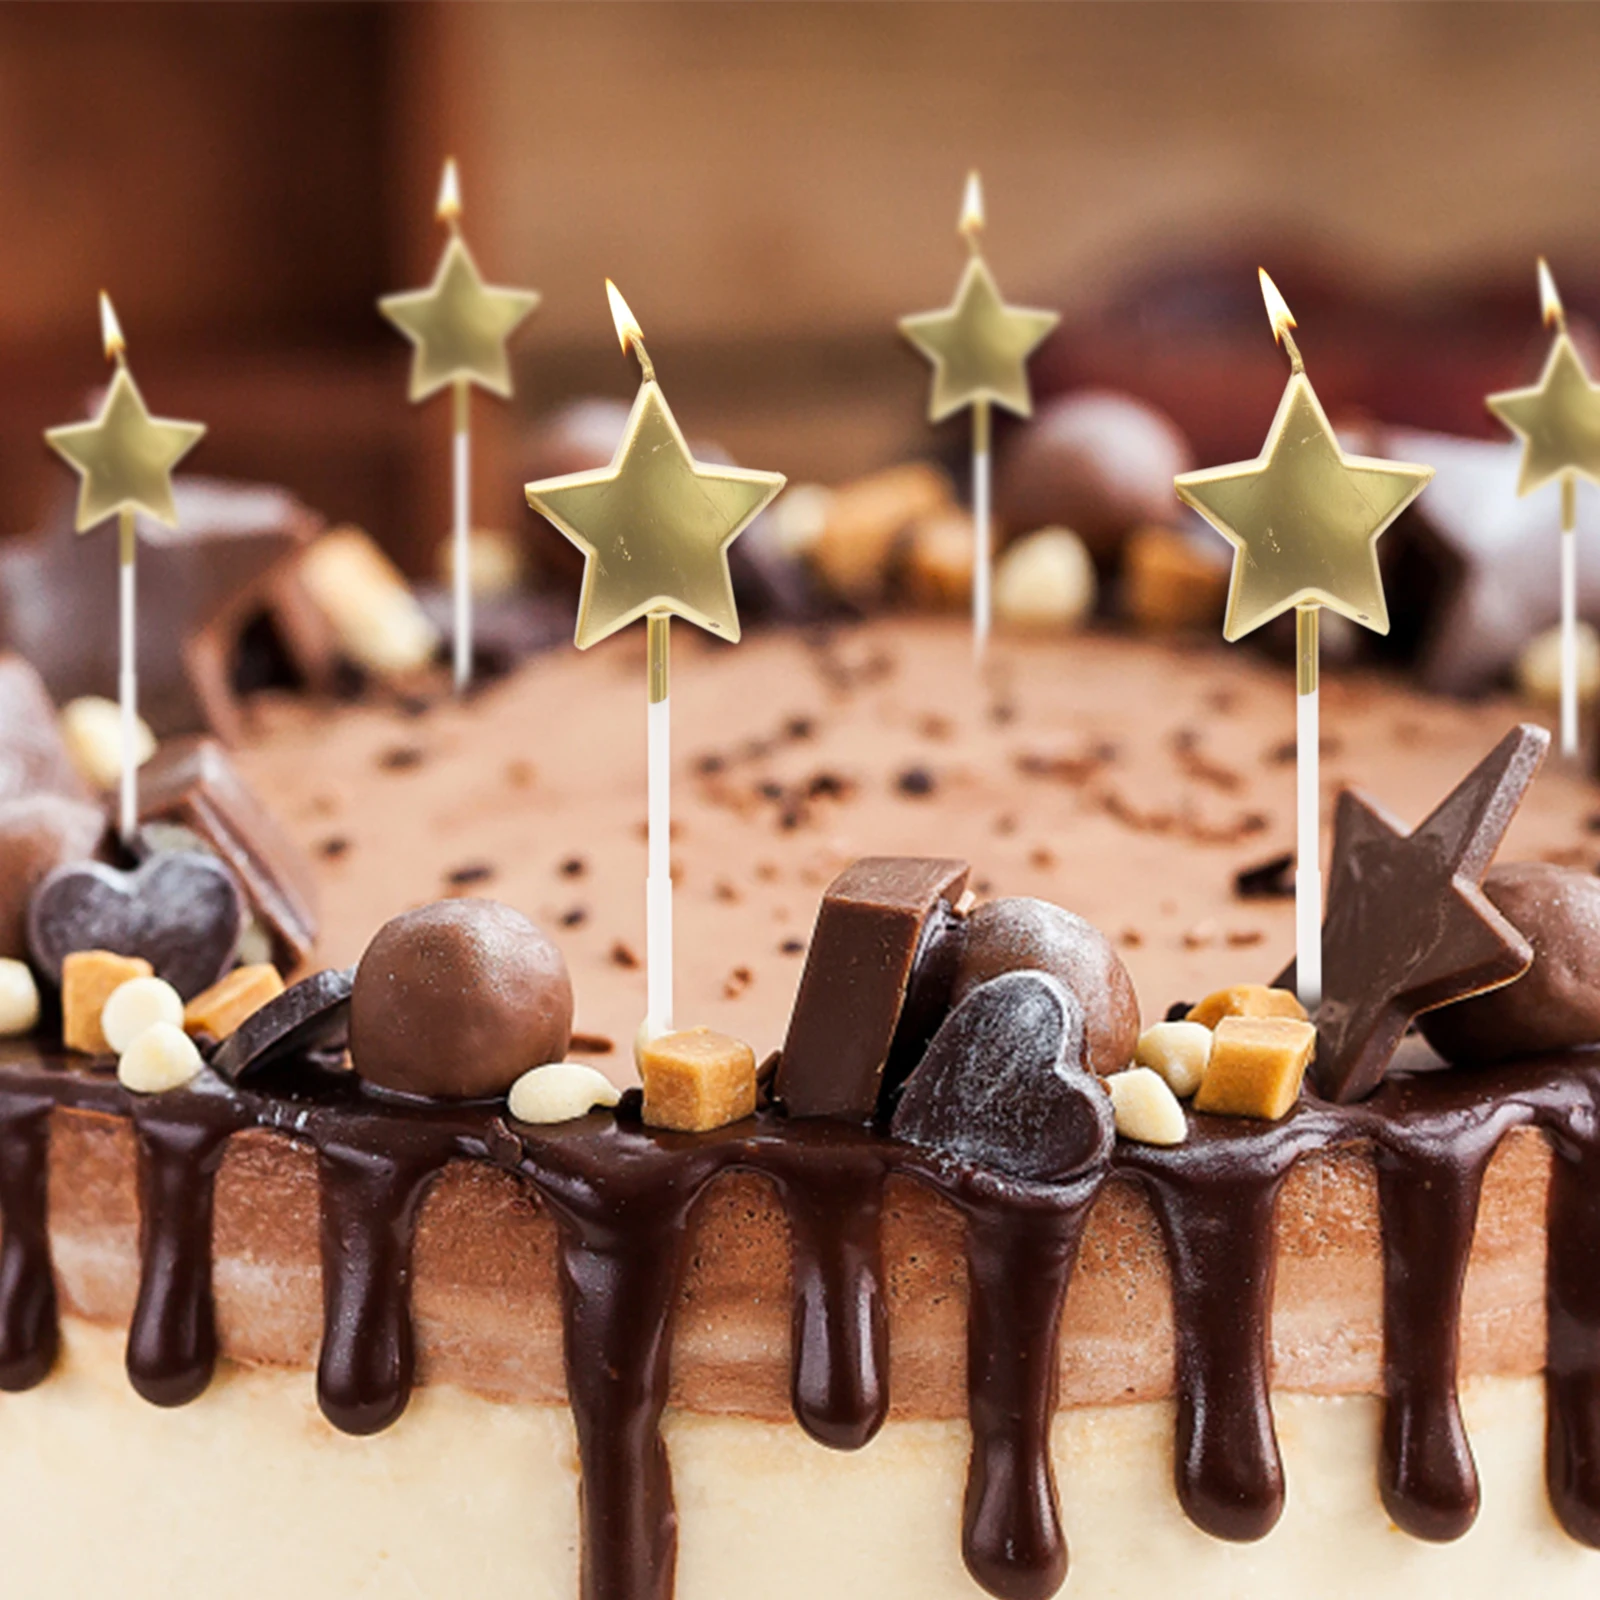 Золотая парафиновая свеча с английскими буквами для украшения торта на день рождения с пентаграммой, праздничные вечерние свечи для торта